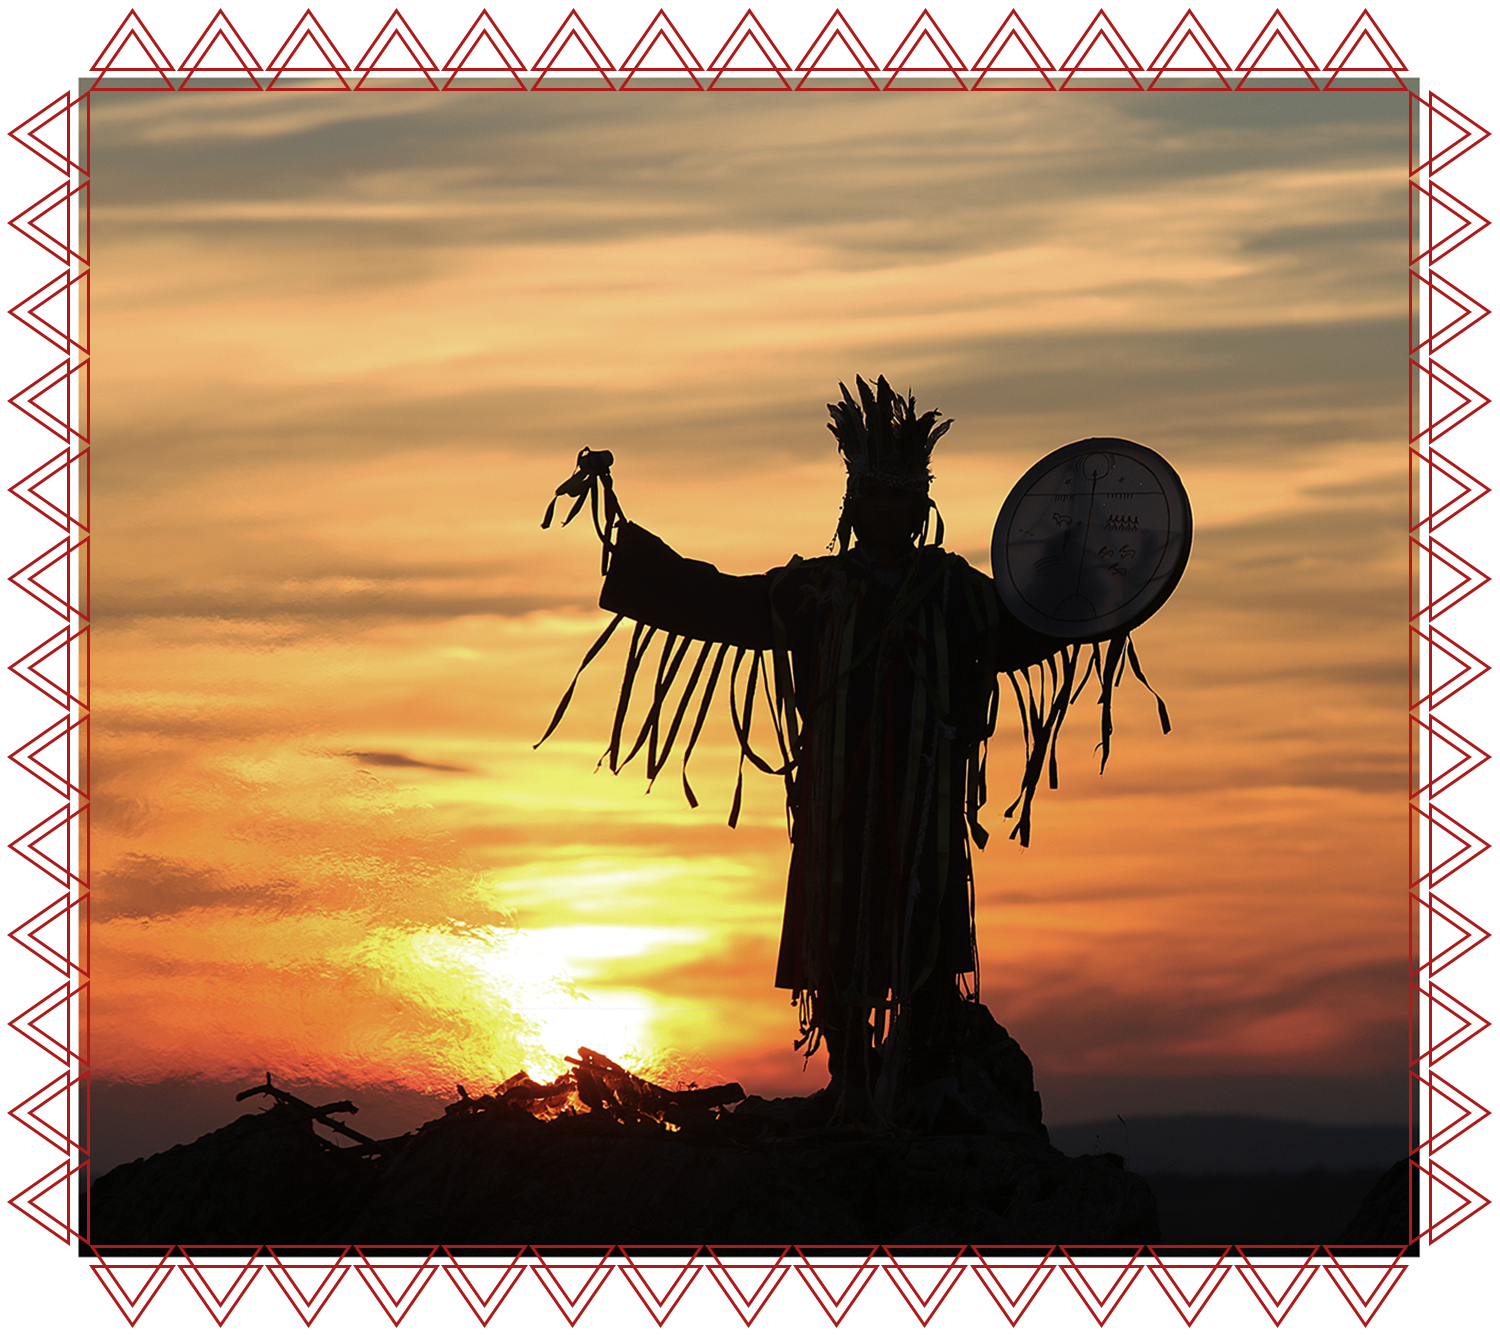 IACFS Schamanismus Akademie - Schamane mit Trommel tanzt vor Lagerfeuer bei Sonnenuntergang